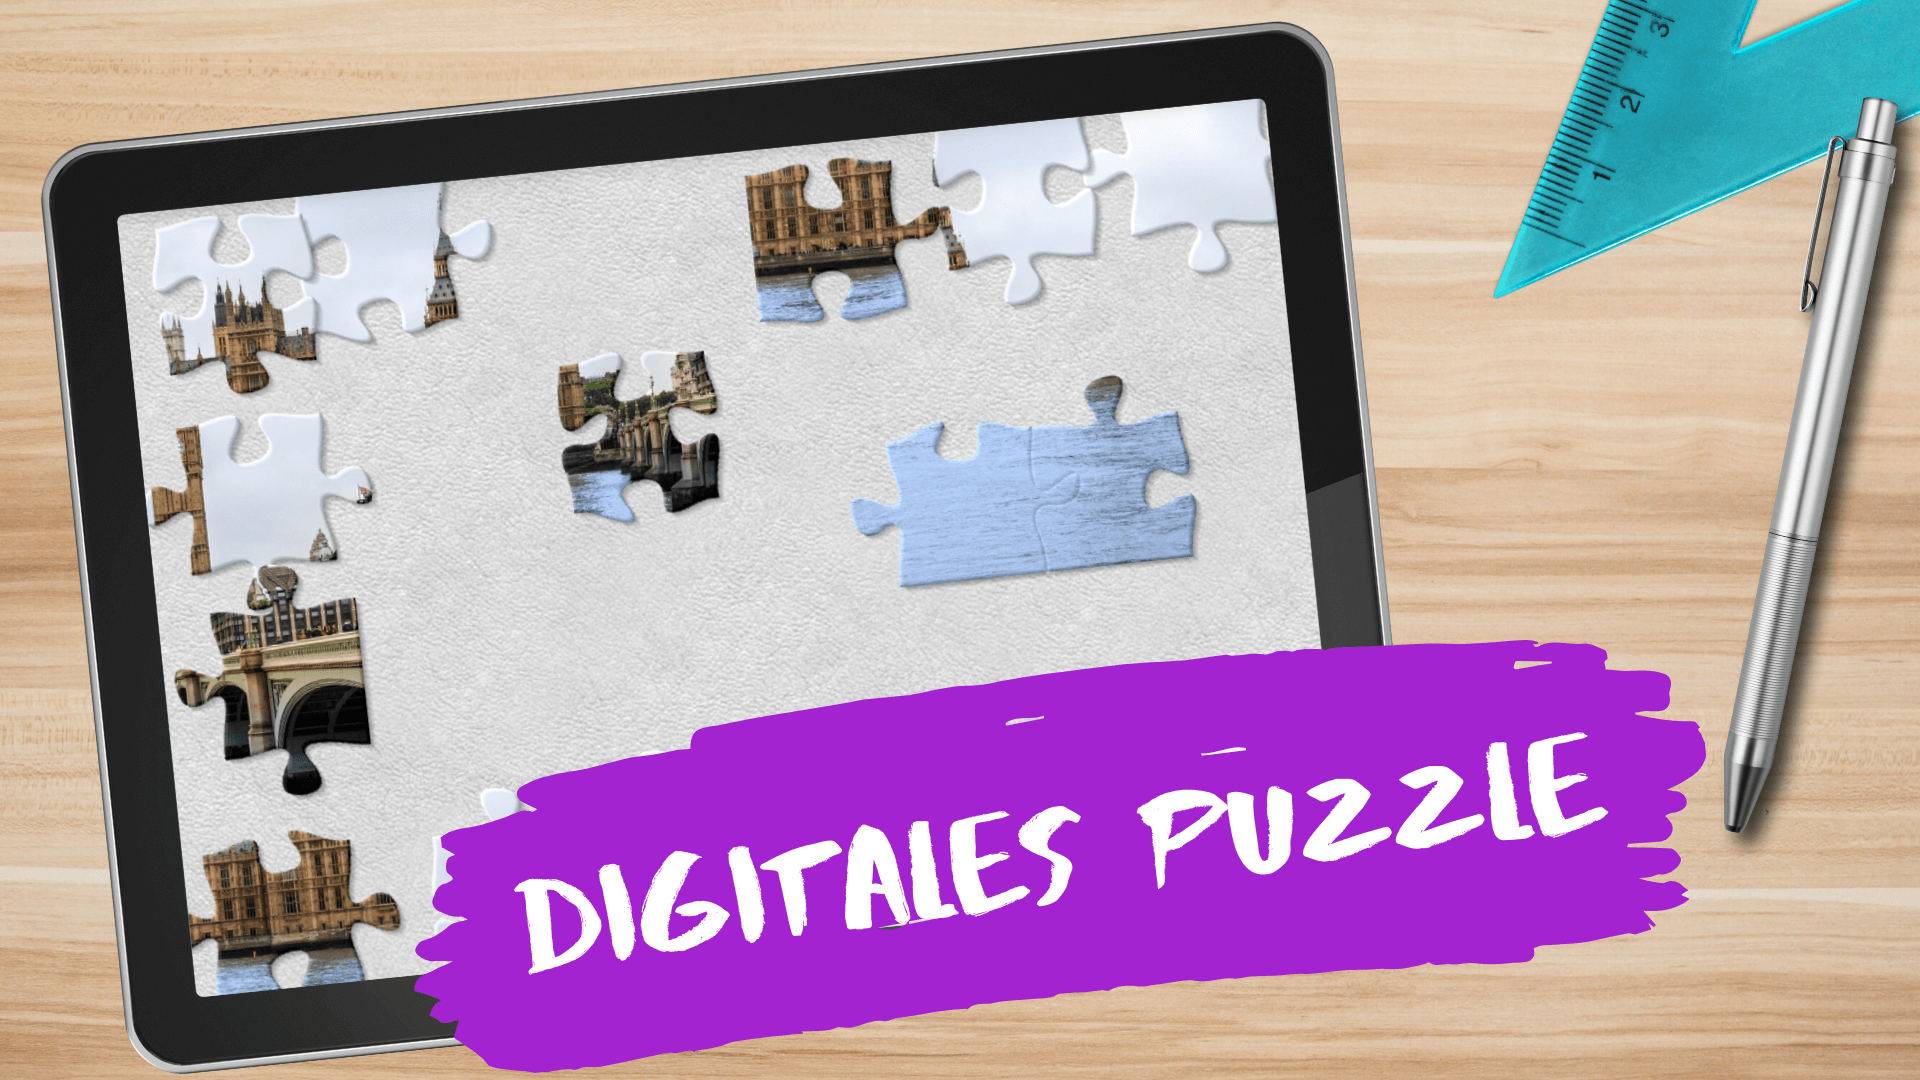 Digitales Puzzle kostenlos